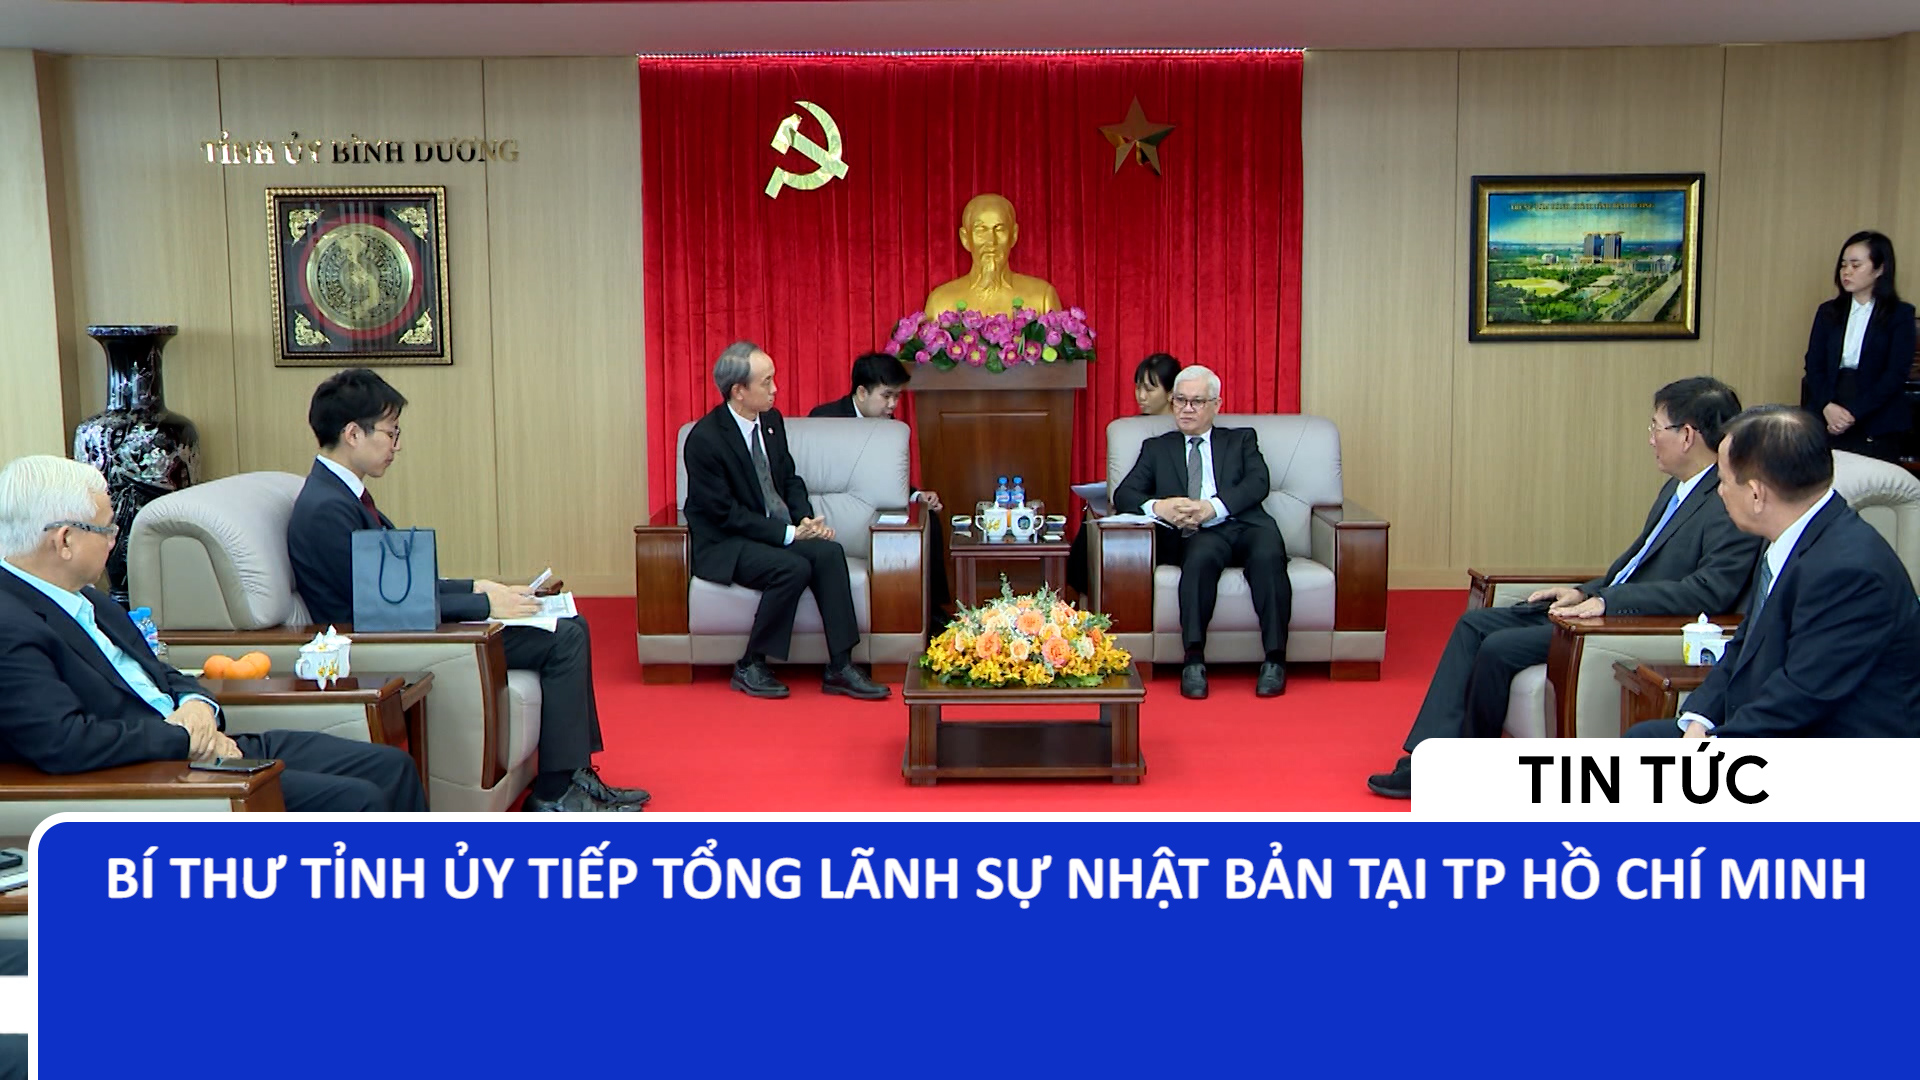 Bí thư Tỉnh ủy tiếp Tổng lãnh sự Nhật Bản tại Tp. Hồ Chí Minh